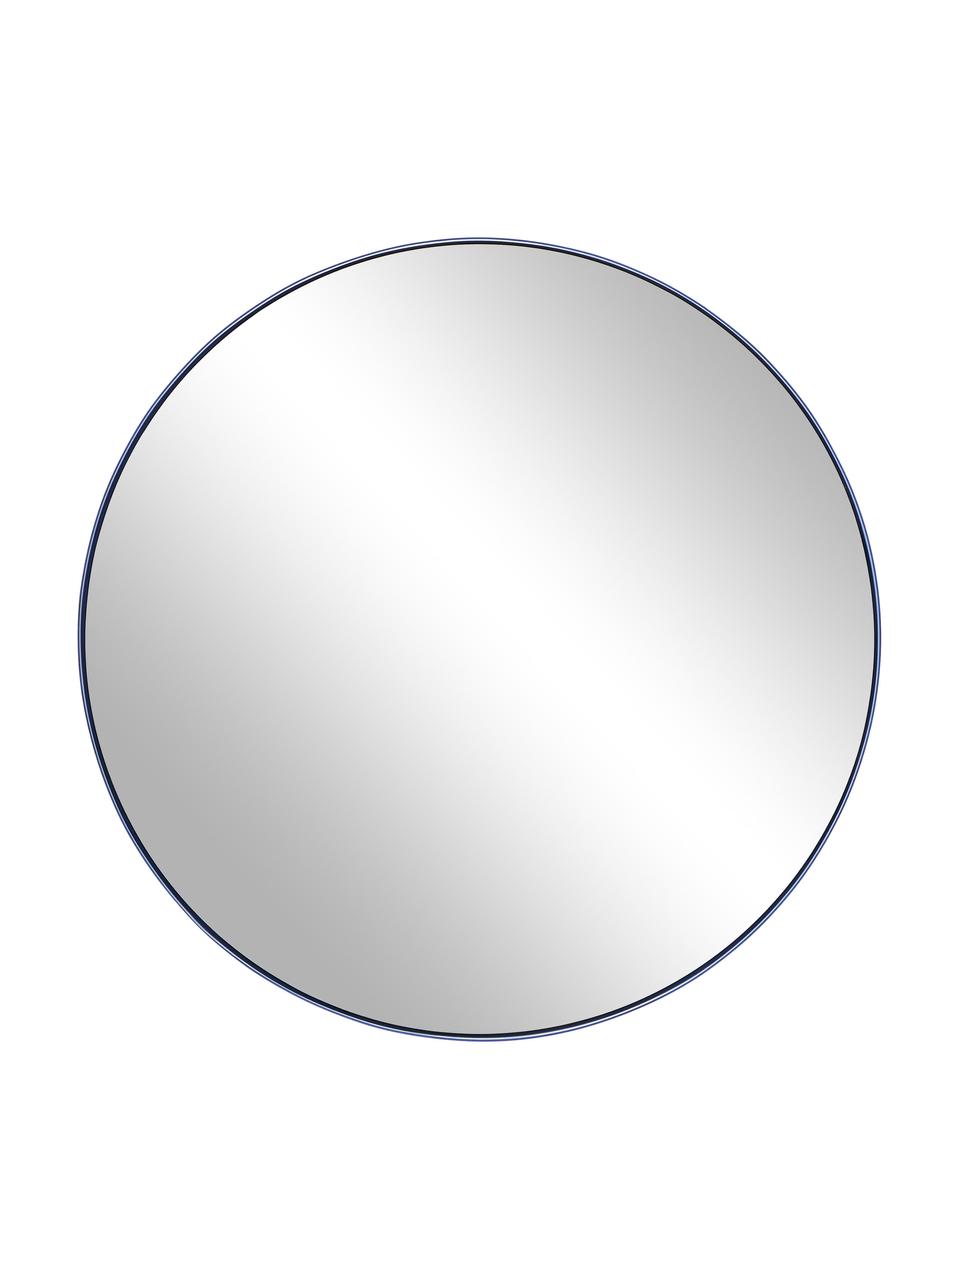 Kulaté nástěnné zrcadlo s kovovým rámem Ivy, Modrá, Ø 55 cm, H 3 cm